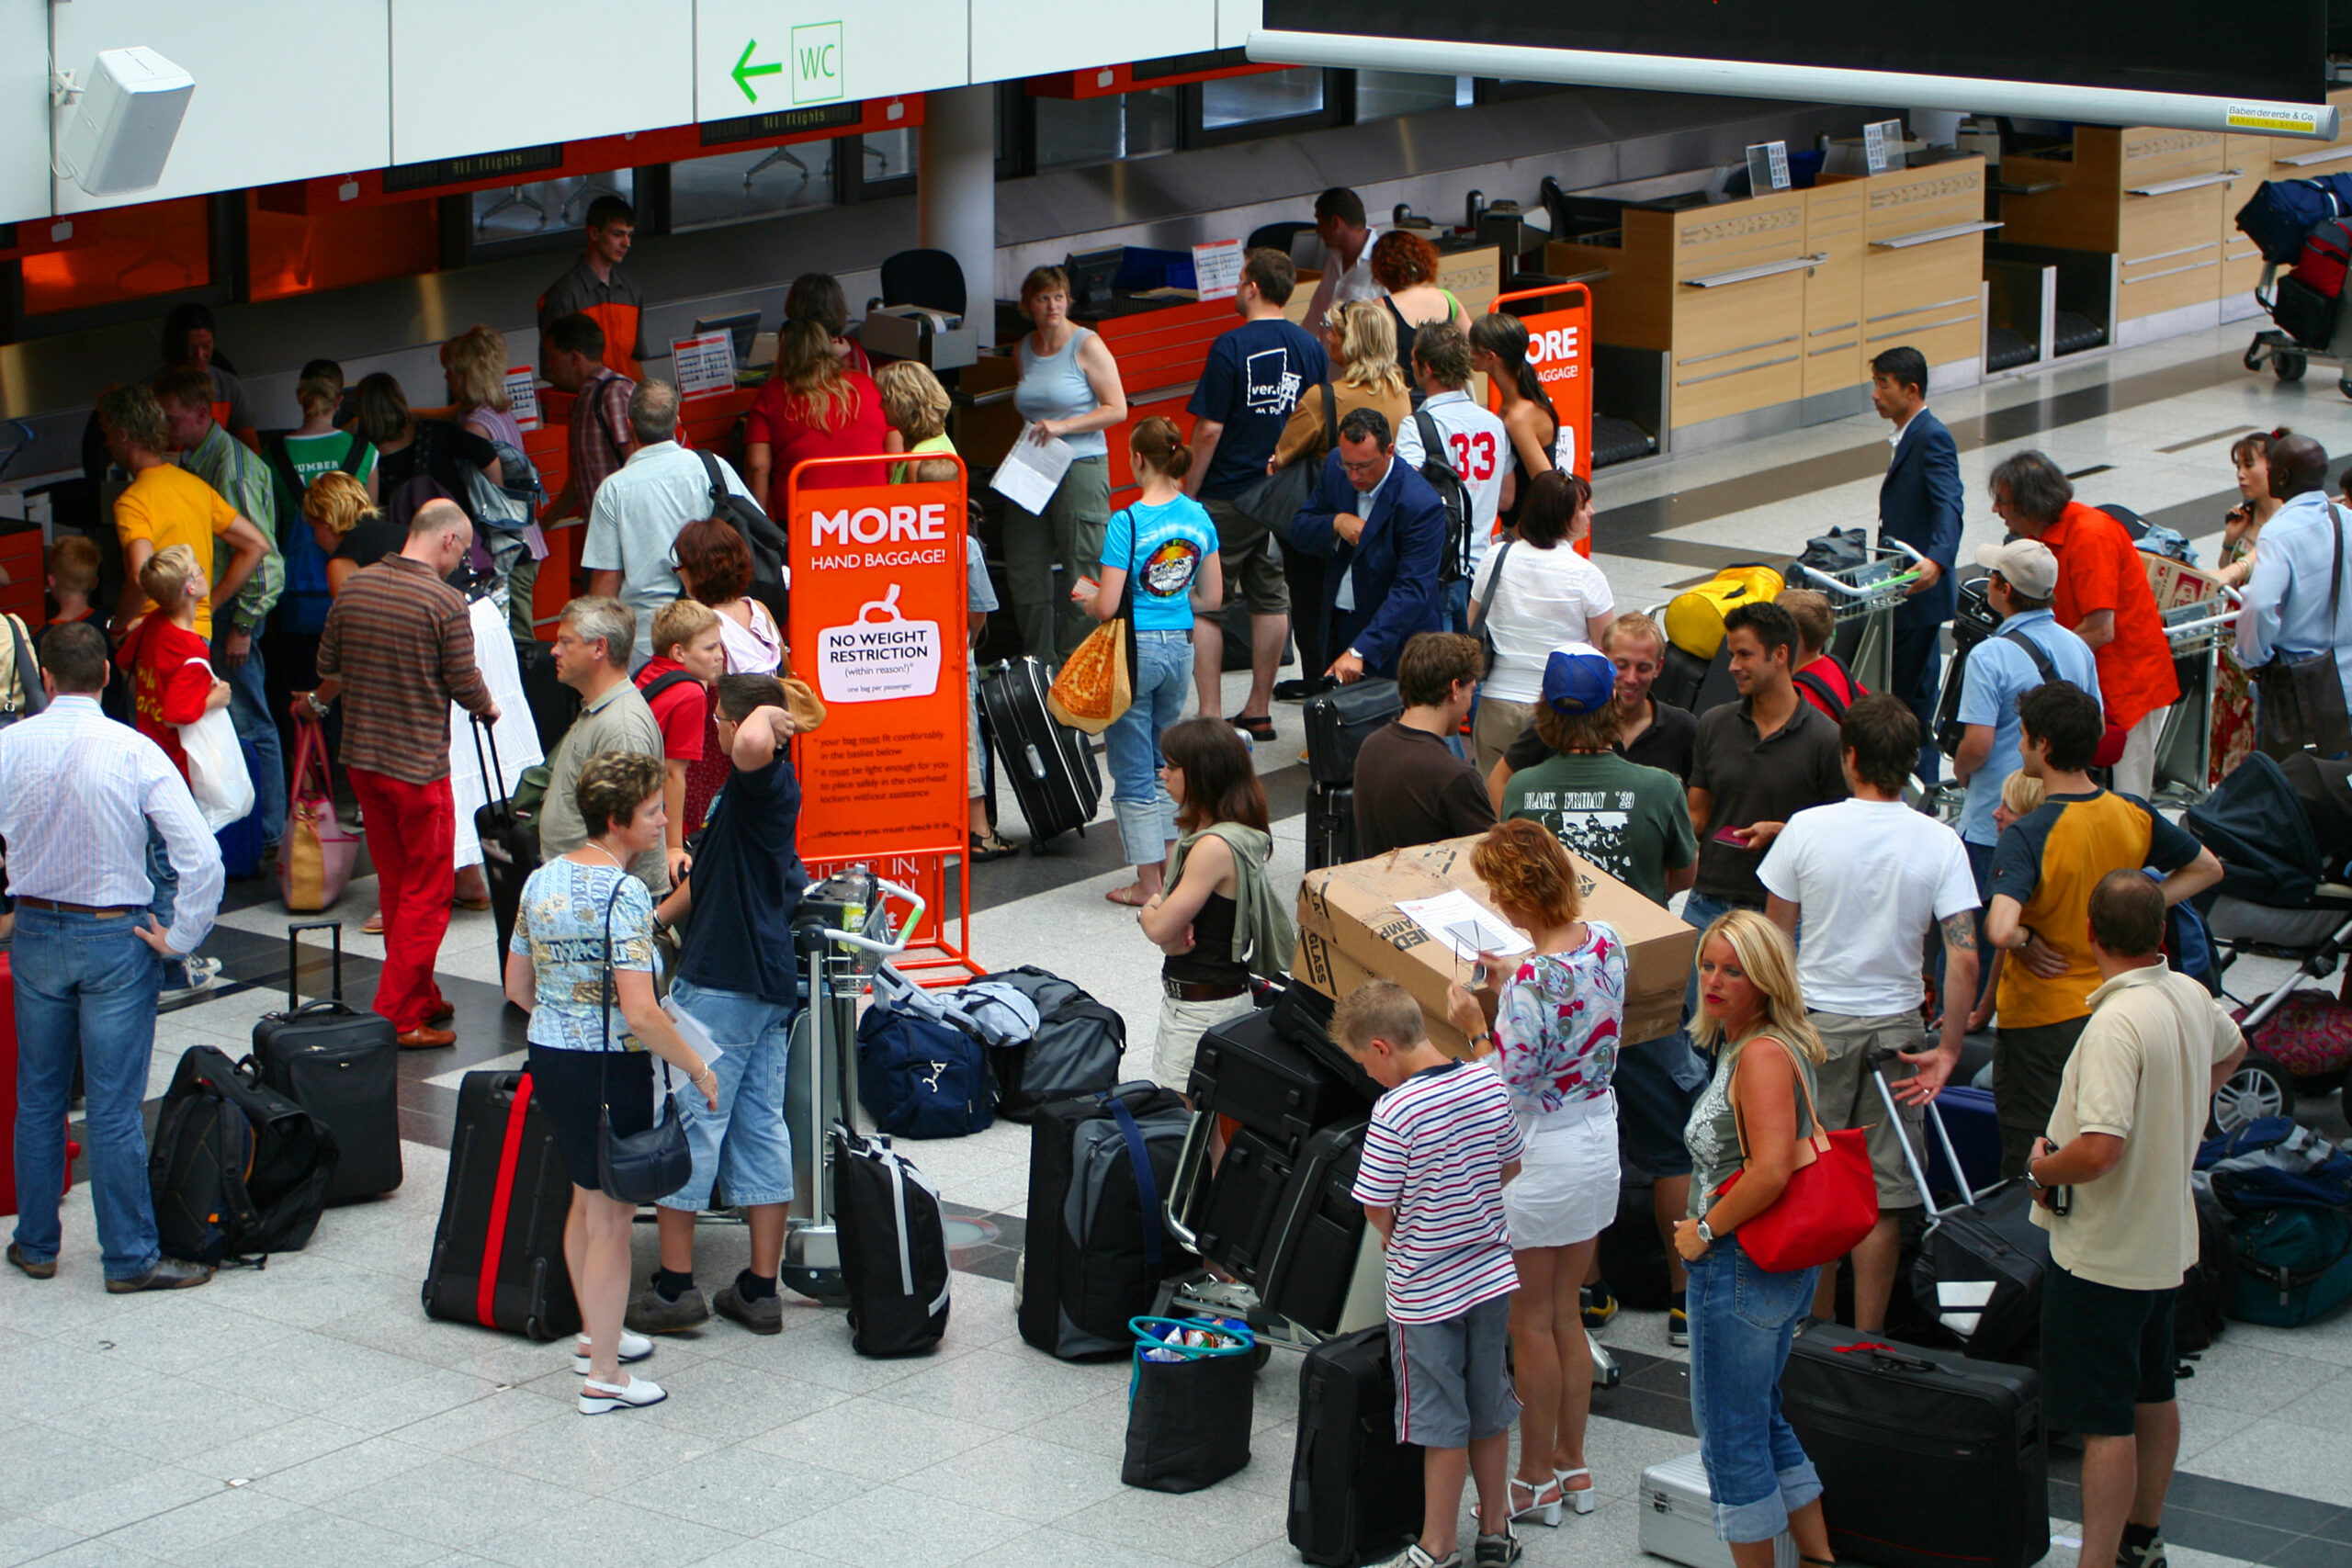 23.6.22: Chaos am Flughafen. Recht der Reisenden bei Warteschlangen. Flug verpasst, was Reisende tun können?